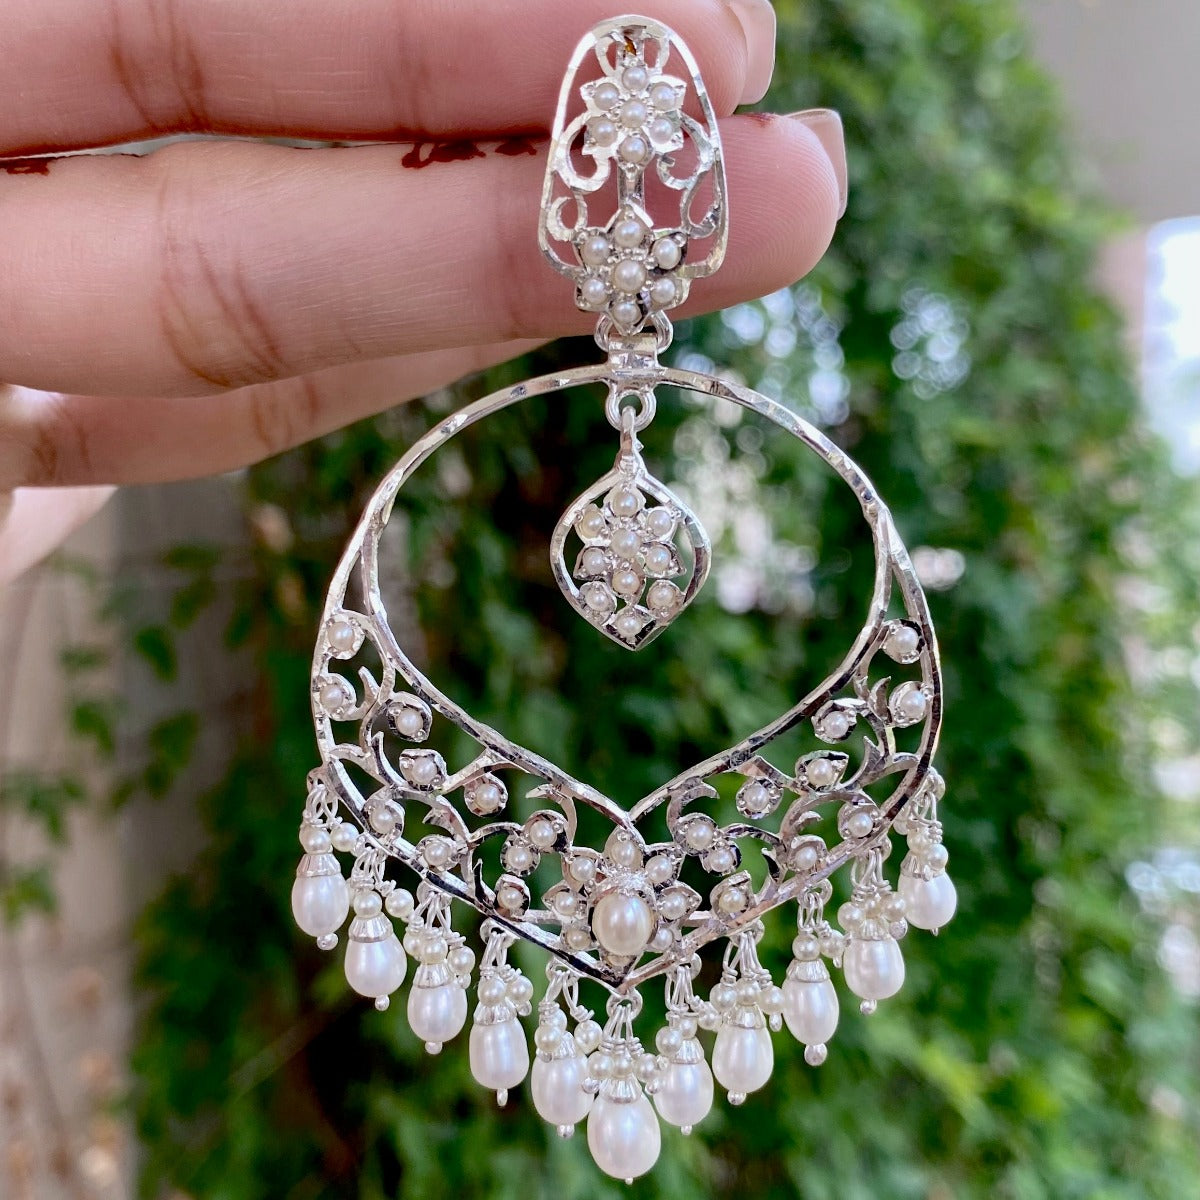 Vintage Edwardian Style Jewelry | Seed Pearl Earrings on Silver